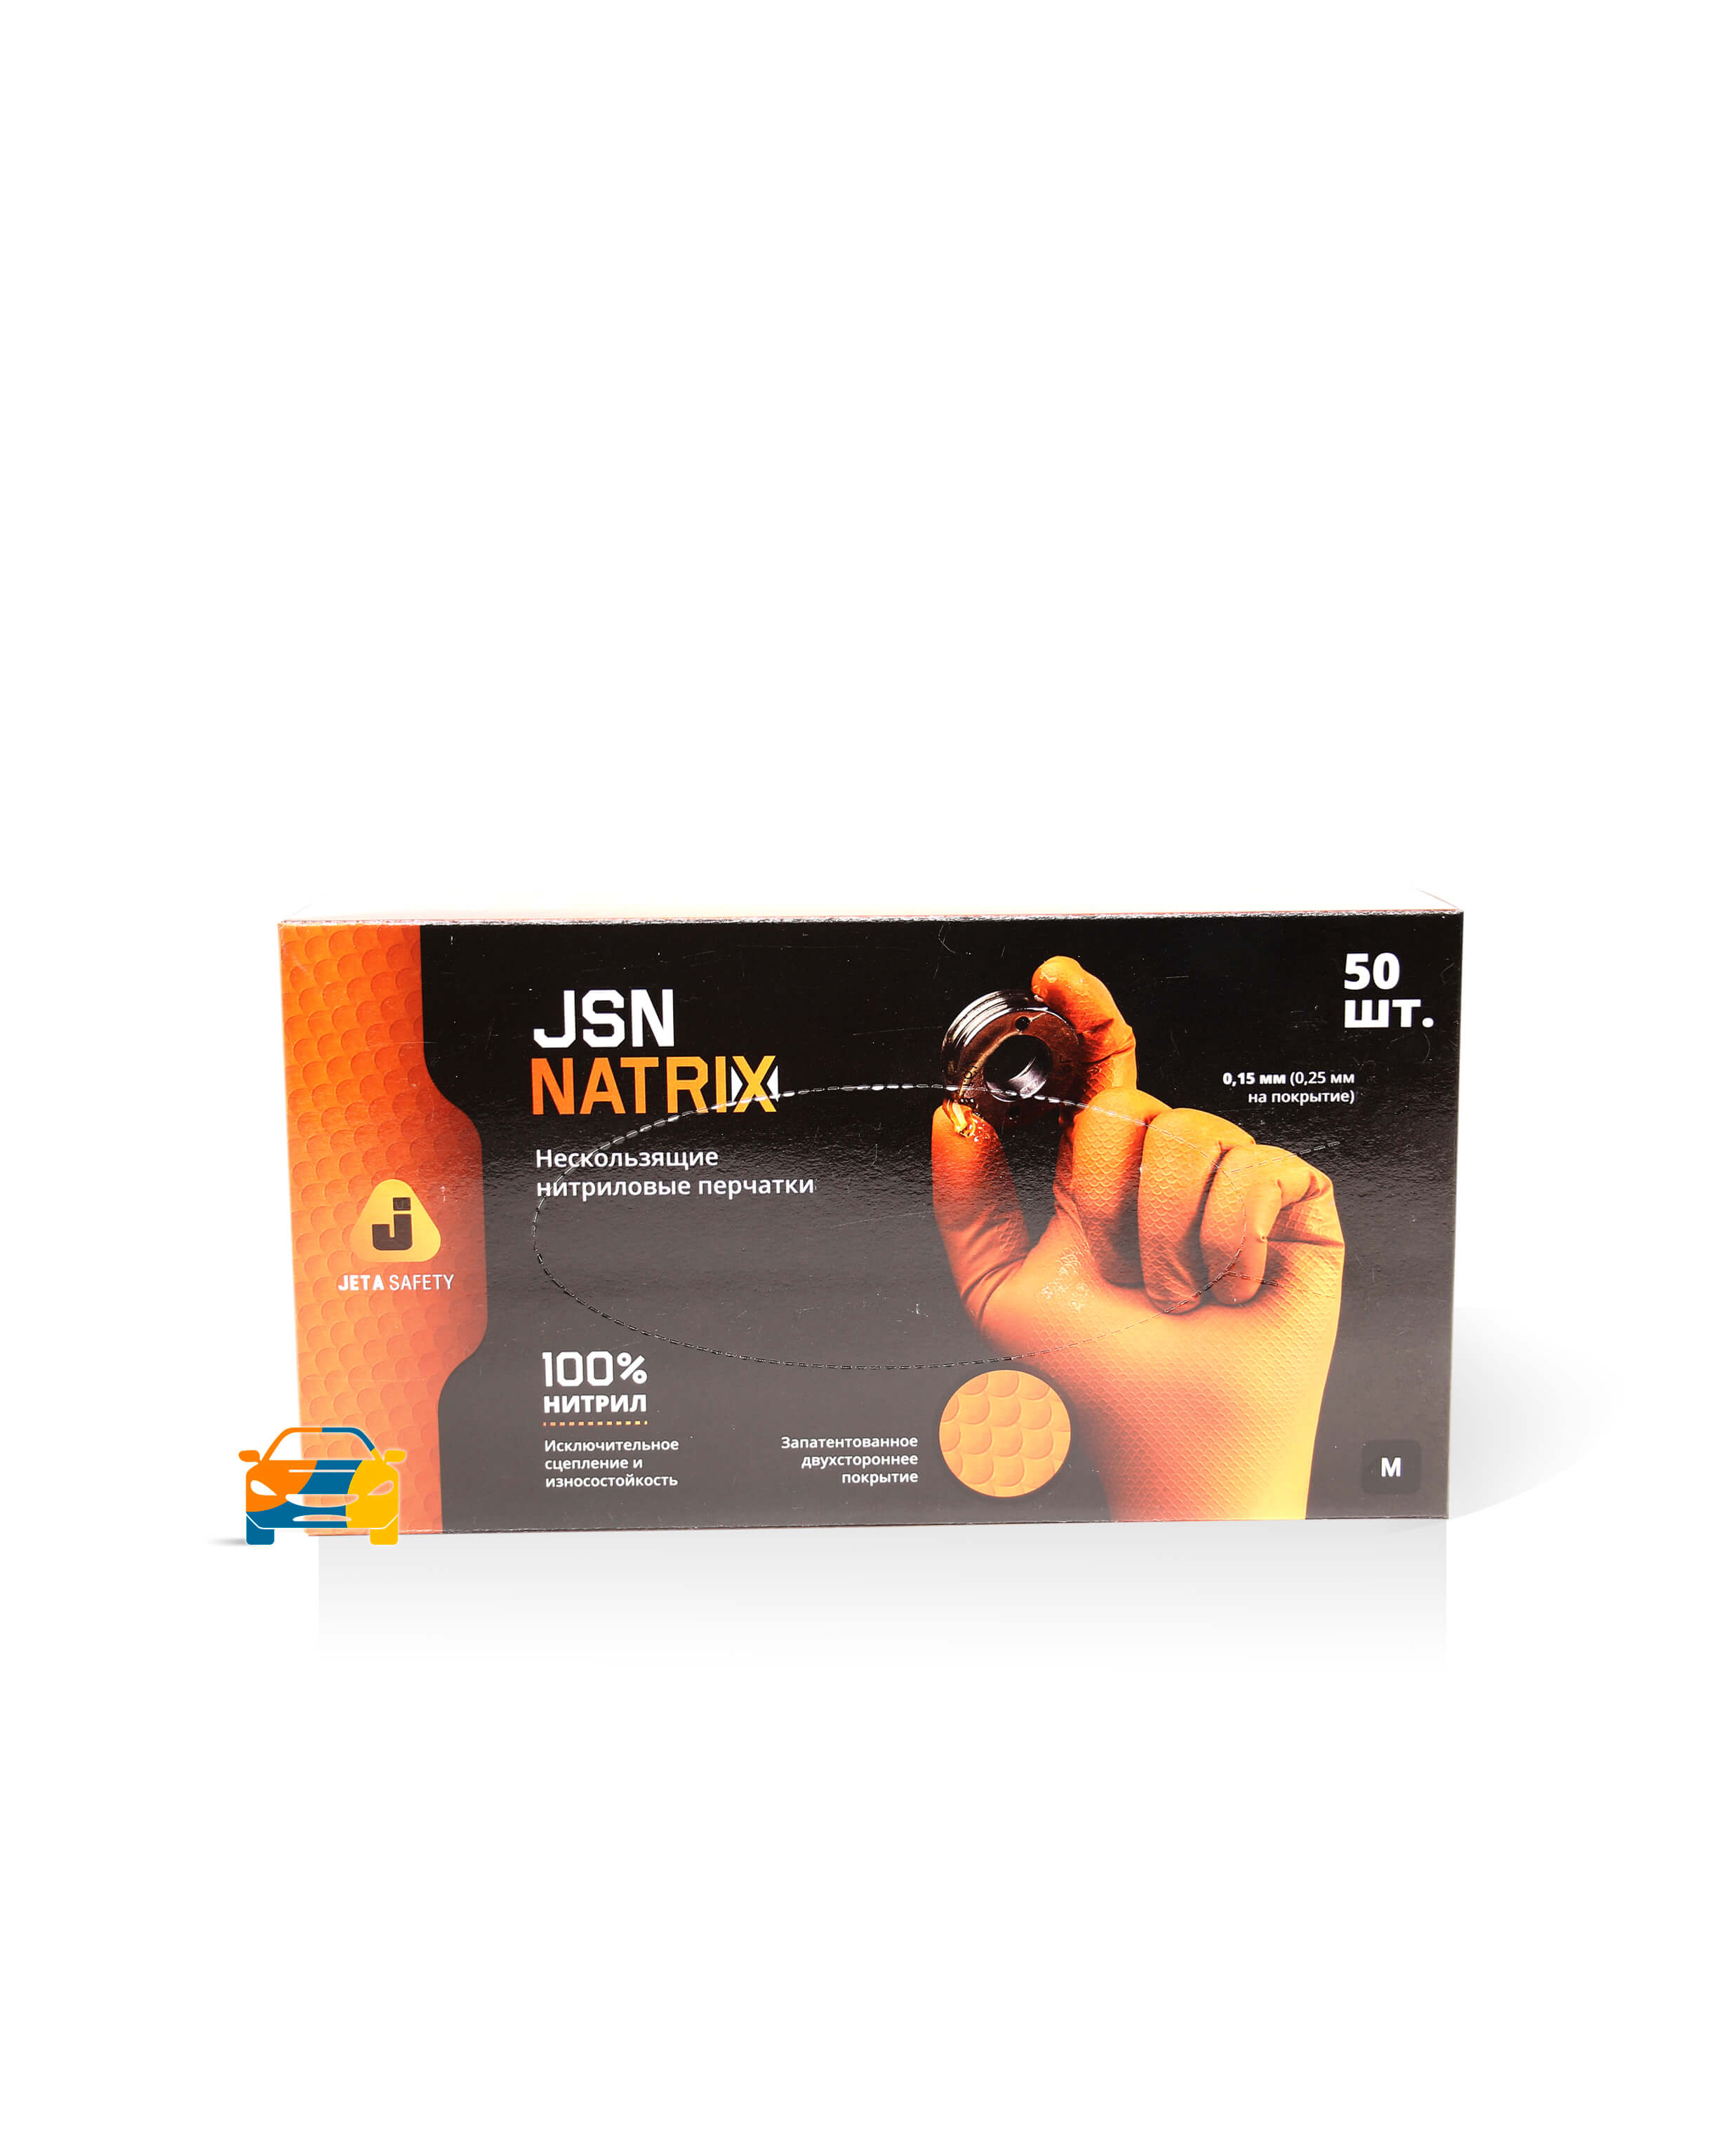 Перчатки JSN NATRIX оранжевые